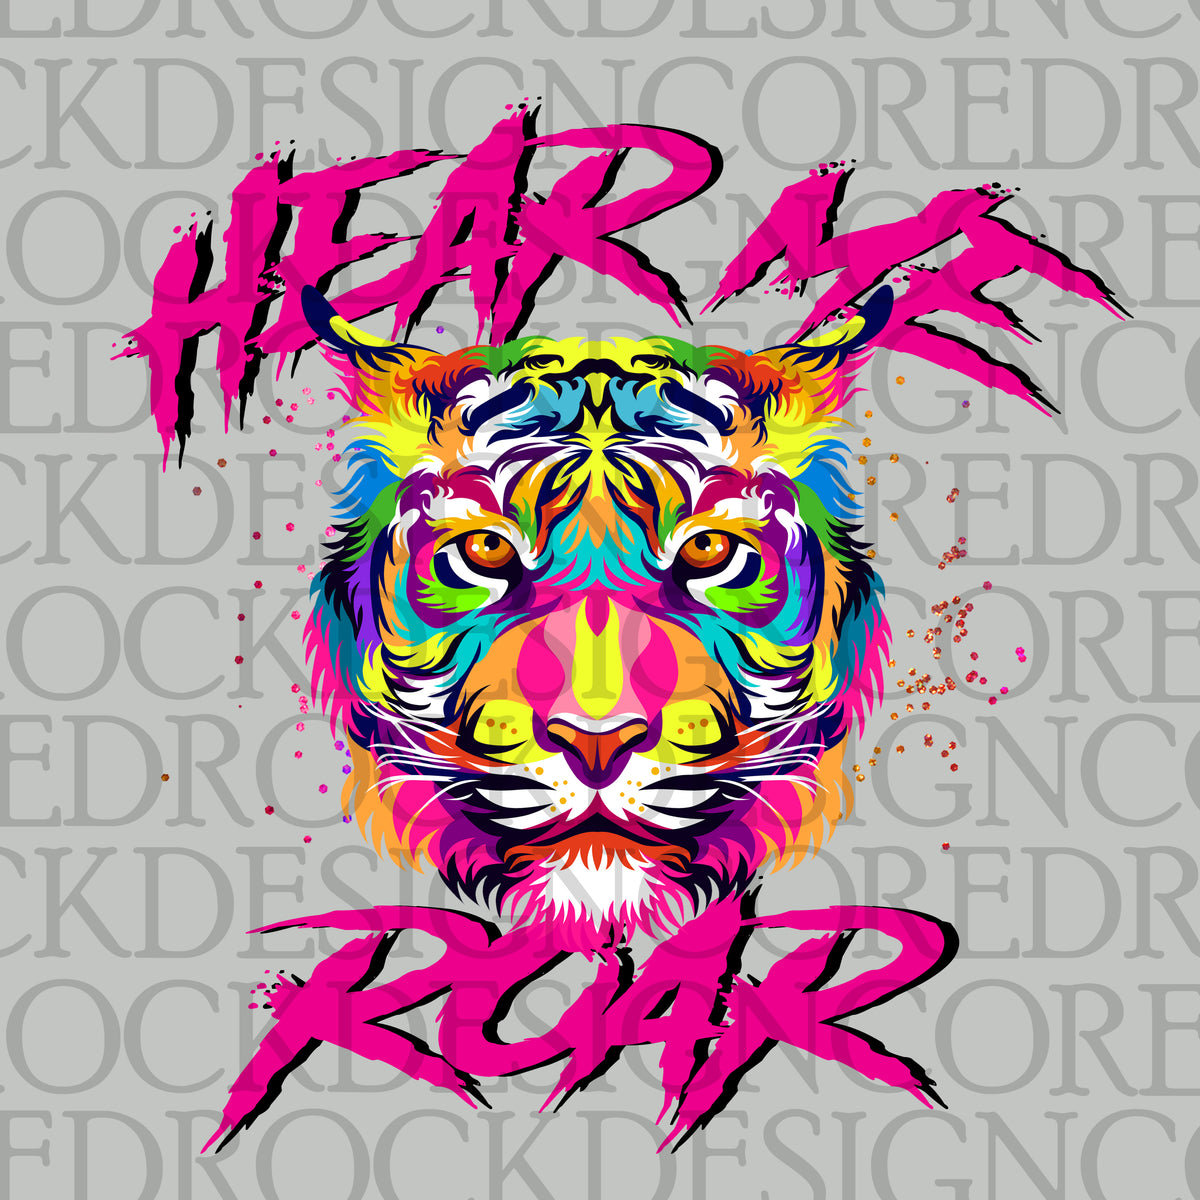 Hear Me Roar Dd – Red Rock Design Co